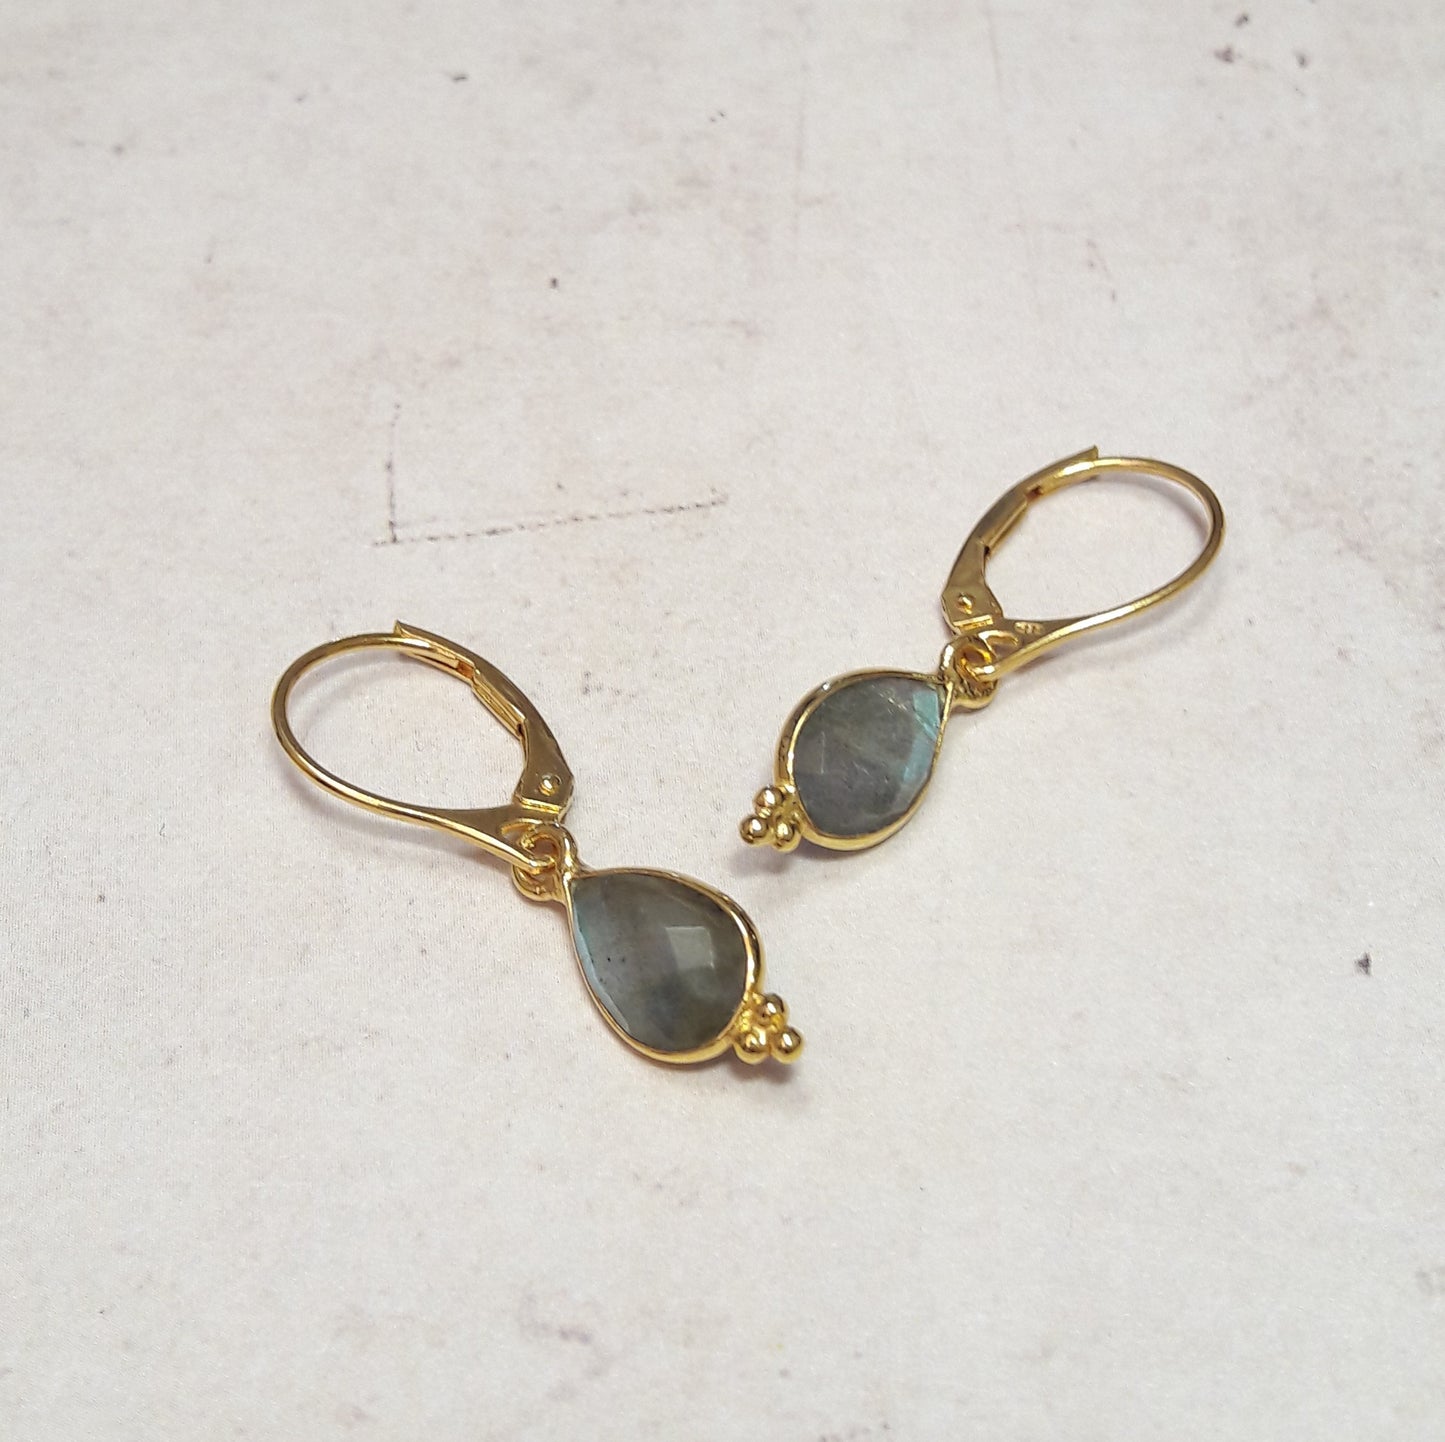 Boucles d'oreilles en argent 925 doré à l'or fin 24 carats et pierres naturelles : labradorite.